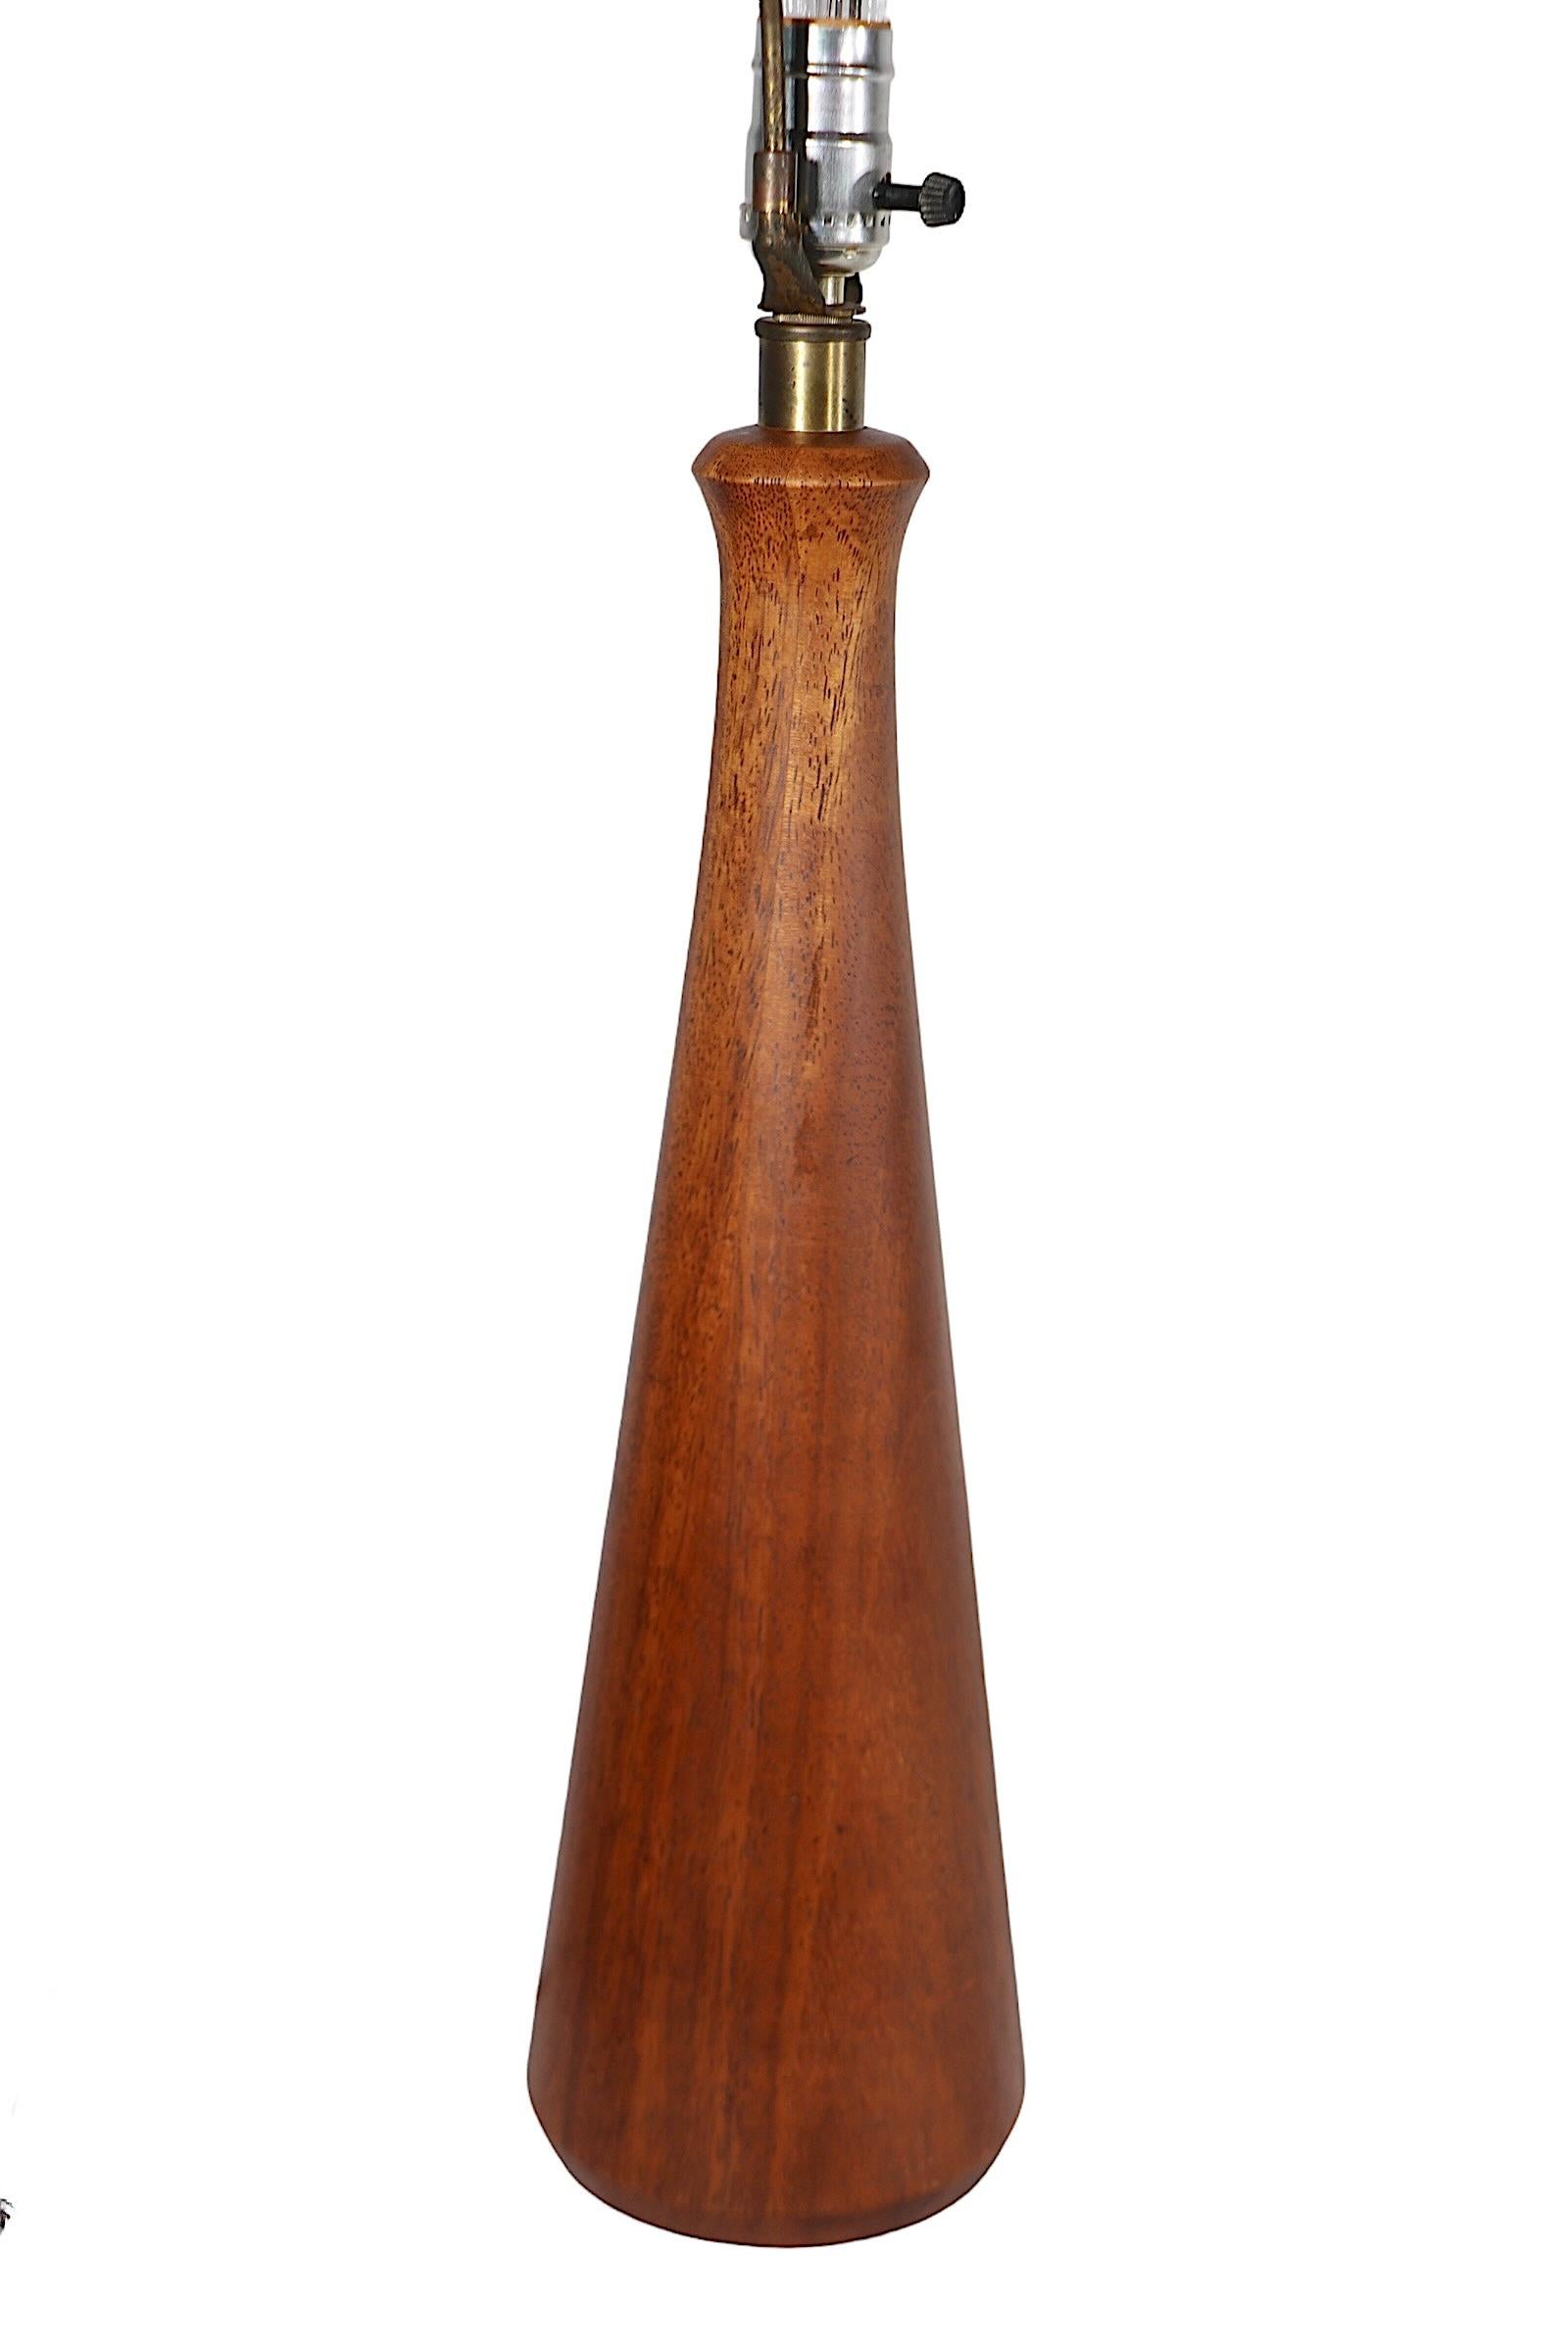 Anspruchsvolle architektonische Holztischlampe aus Massivholz (wahrscheinlich Nussbaum)  Körper, der oben einen schmalen Hals hat und sich zur Basis hin verbreitert. Wir glauben, dass die Lampe in den USA hergestellt wurde, im dänischen Stil, sie